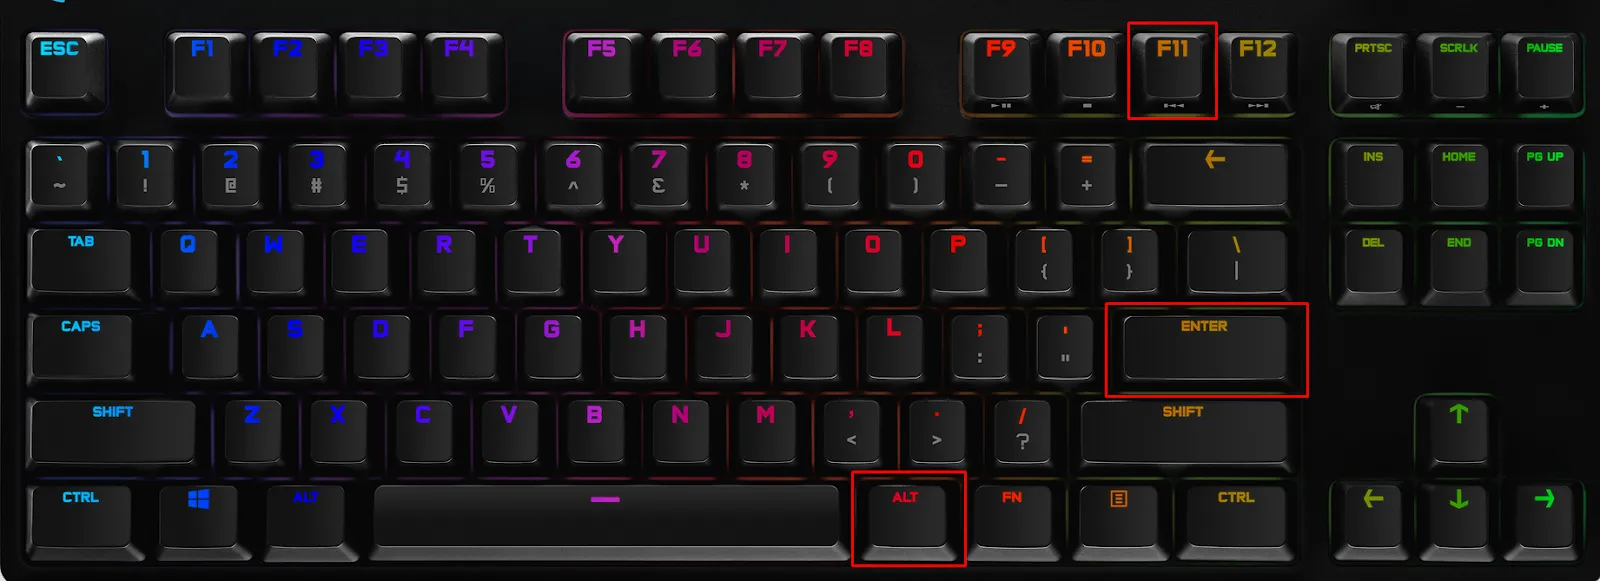 fullscreen keyboard shortcut albion online